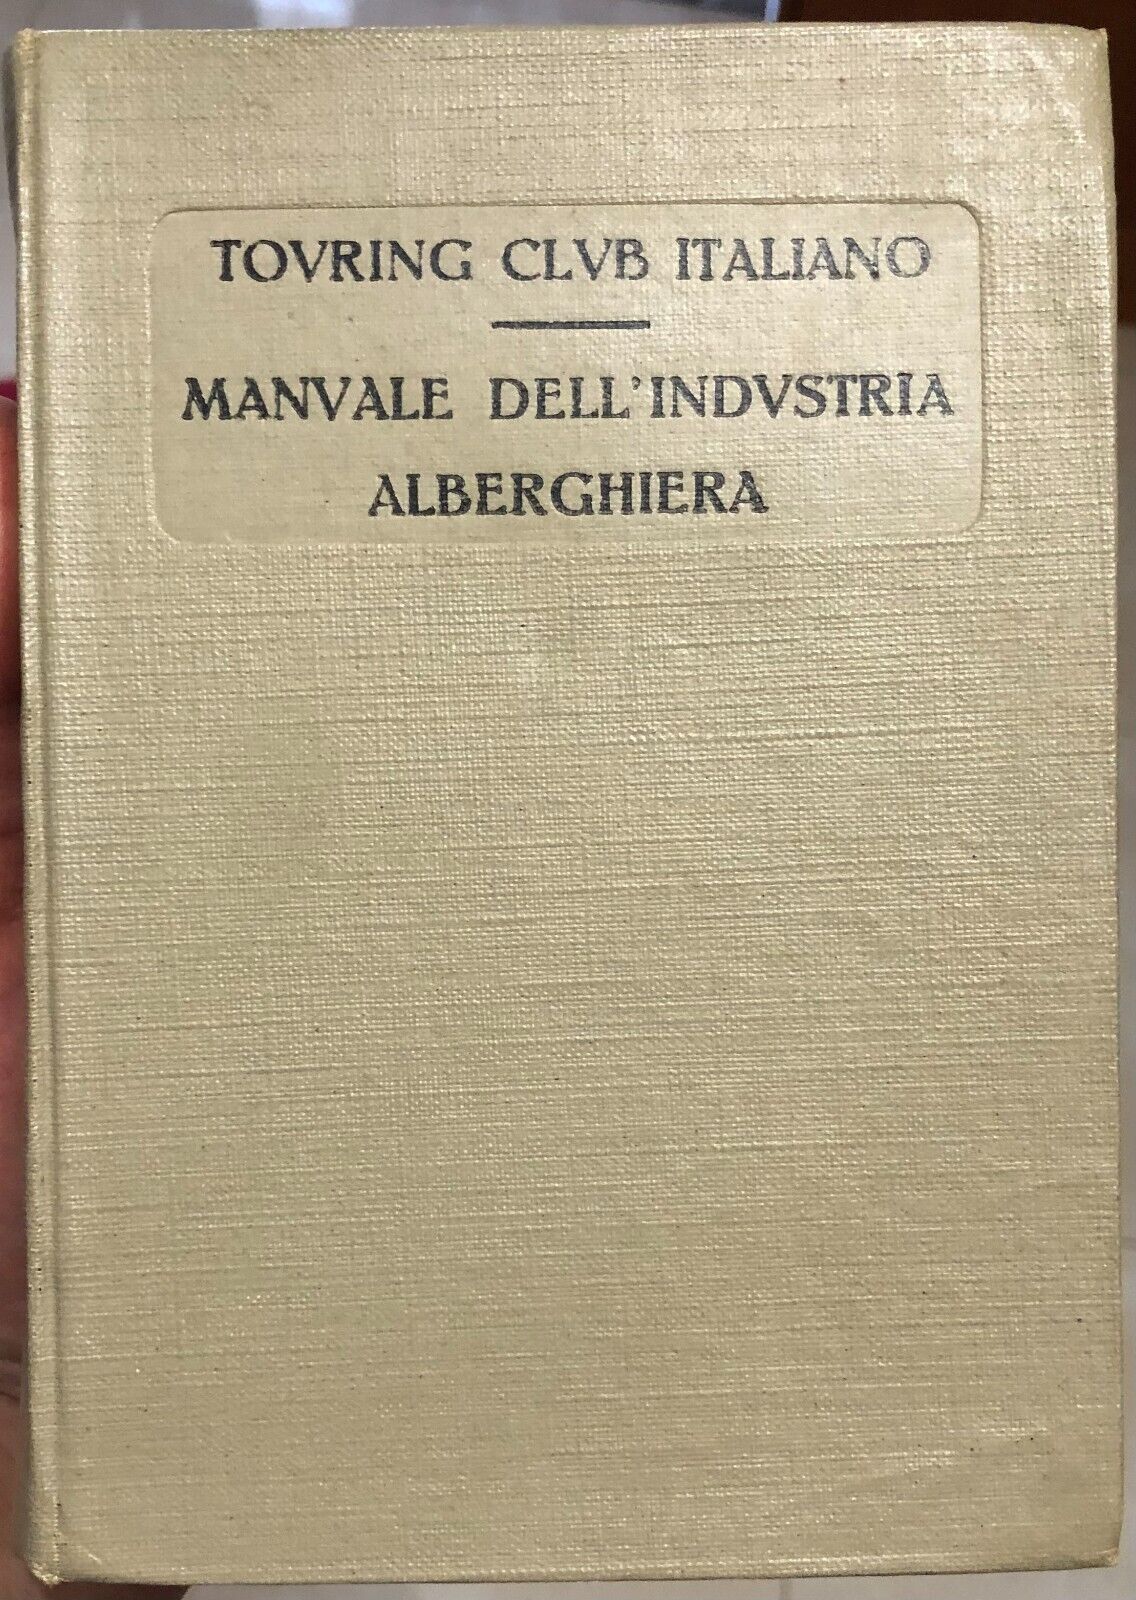 Manuale delL'industria alberghiera di Aa.vv., 1923, Touring Club Italiano